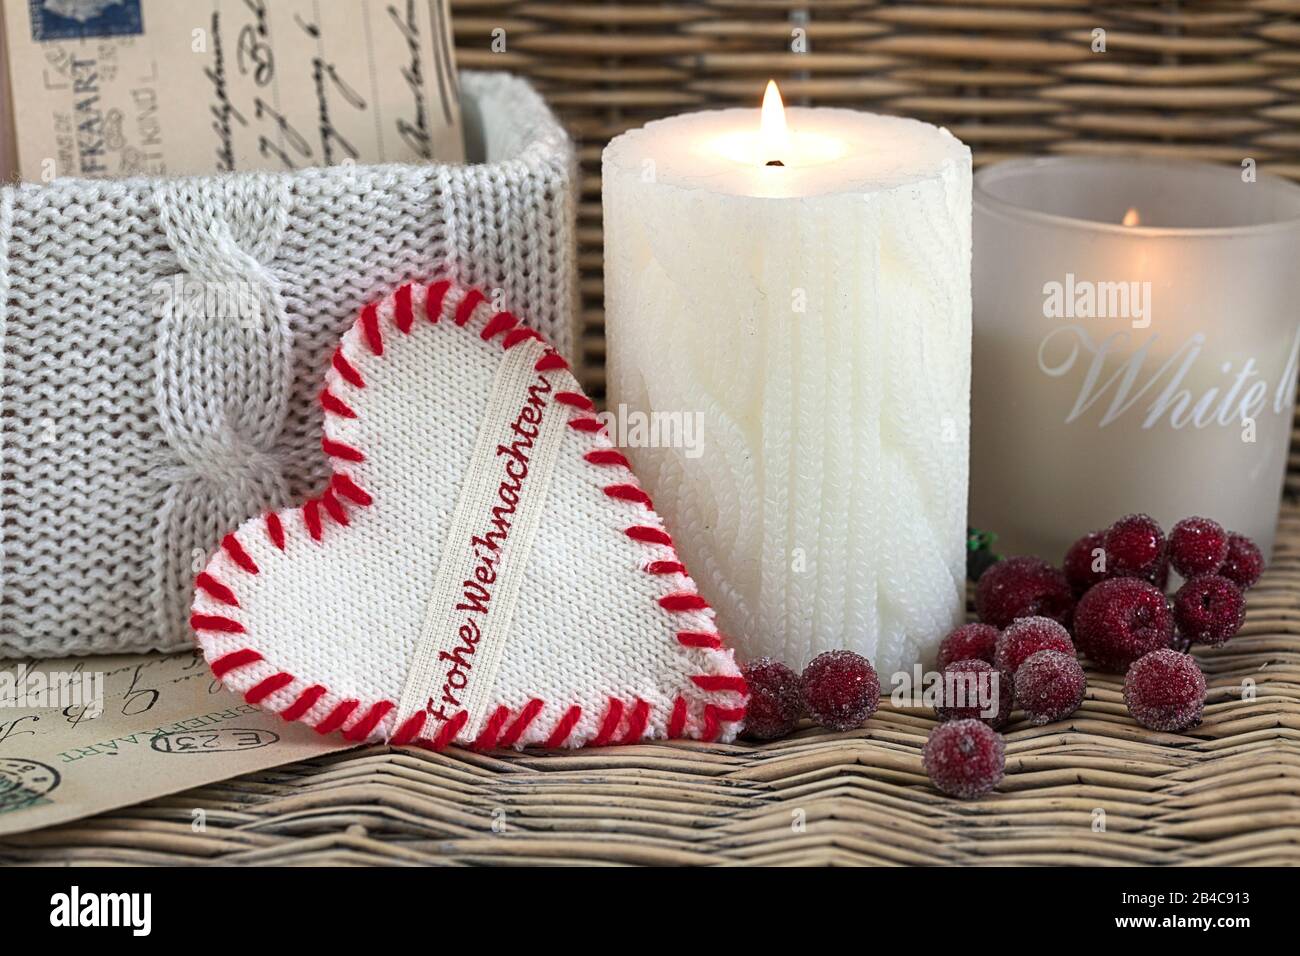 Noël style robe de noël toujours la vie avec avec des objets de style tricoté, bougie et coeur avec texte allemand pour Joyeux Noël Banque D'Images